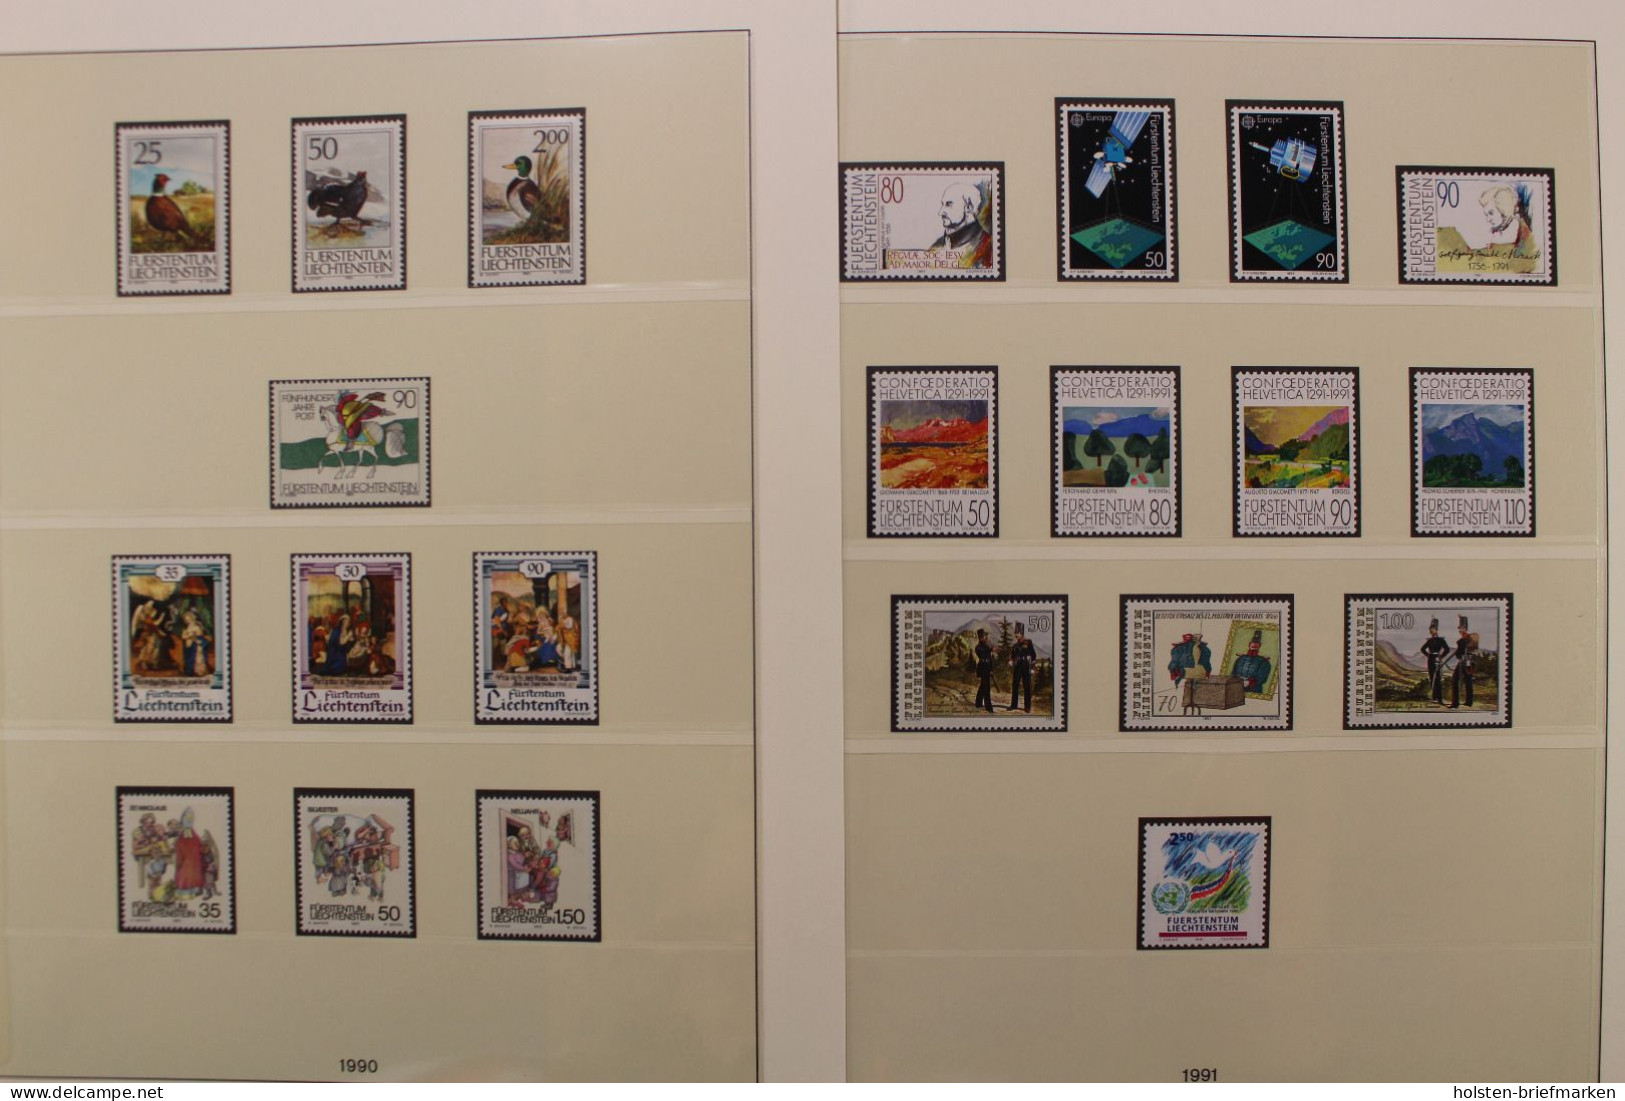 Liechtenstein 1985-2004 postfrische komplette Sammlung auf Lindner T